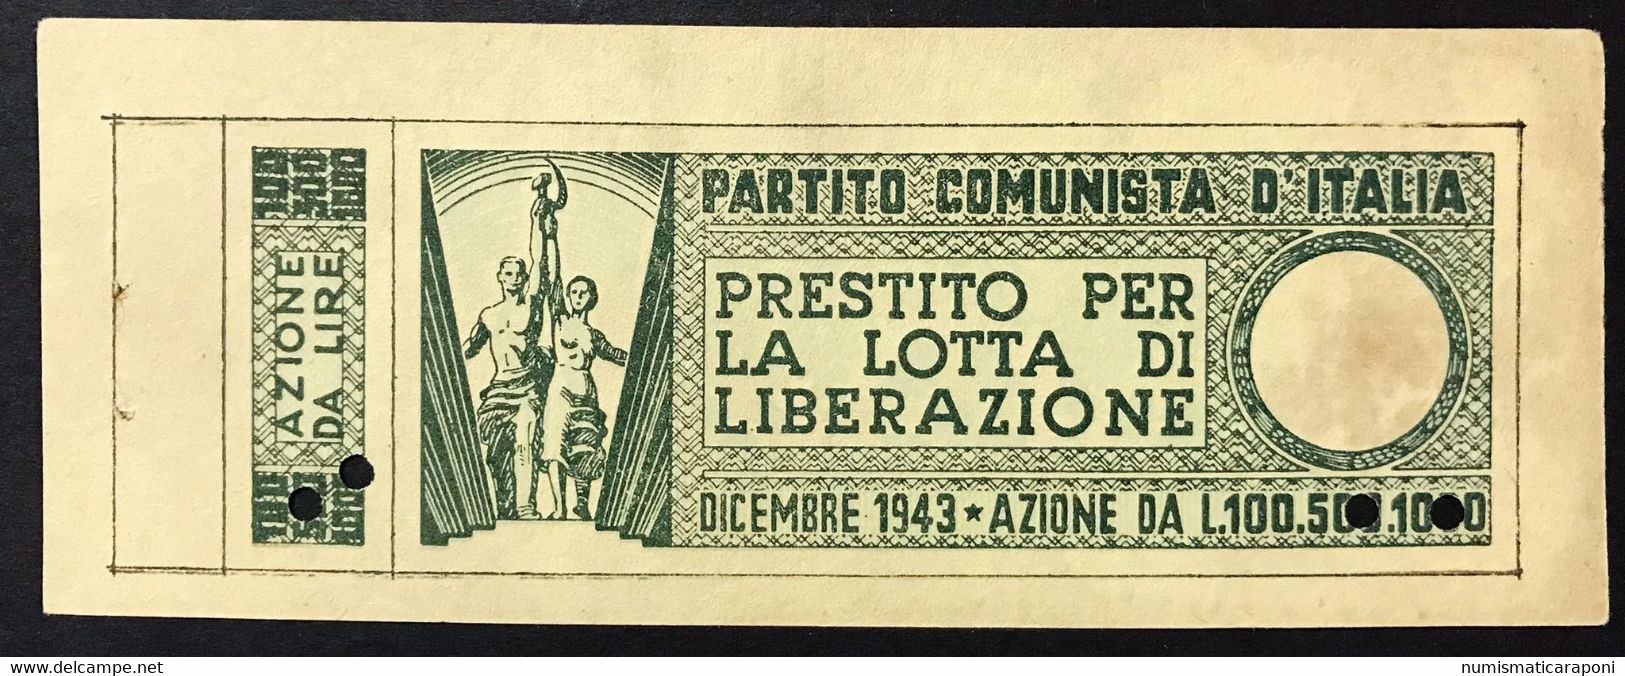 100 LIRE PARTITO COMUNISTA D'ITALIA LOTTA DI LIBERAZIONE DICEMBRE 1943 Lotto 4166 - 2. WK - Alliierte Besatzung